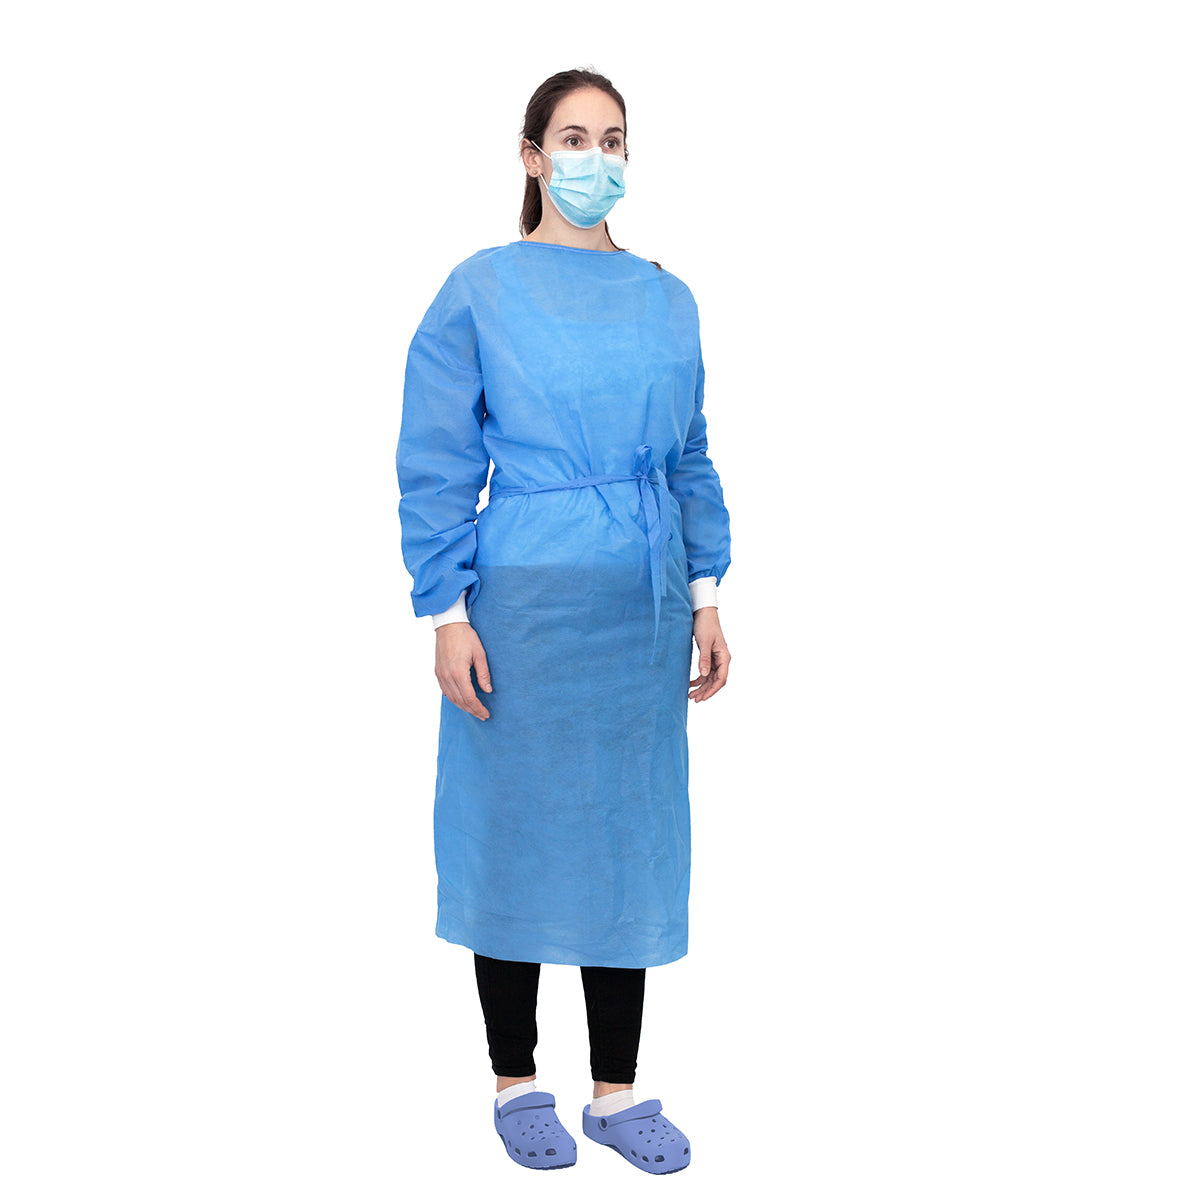 Examination Gown - Blue, Medium, 120 X 140 CM